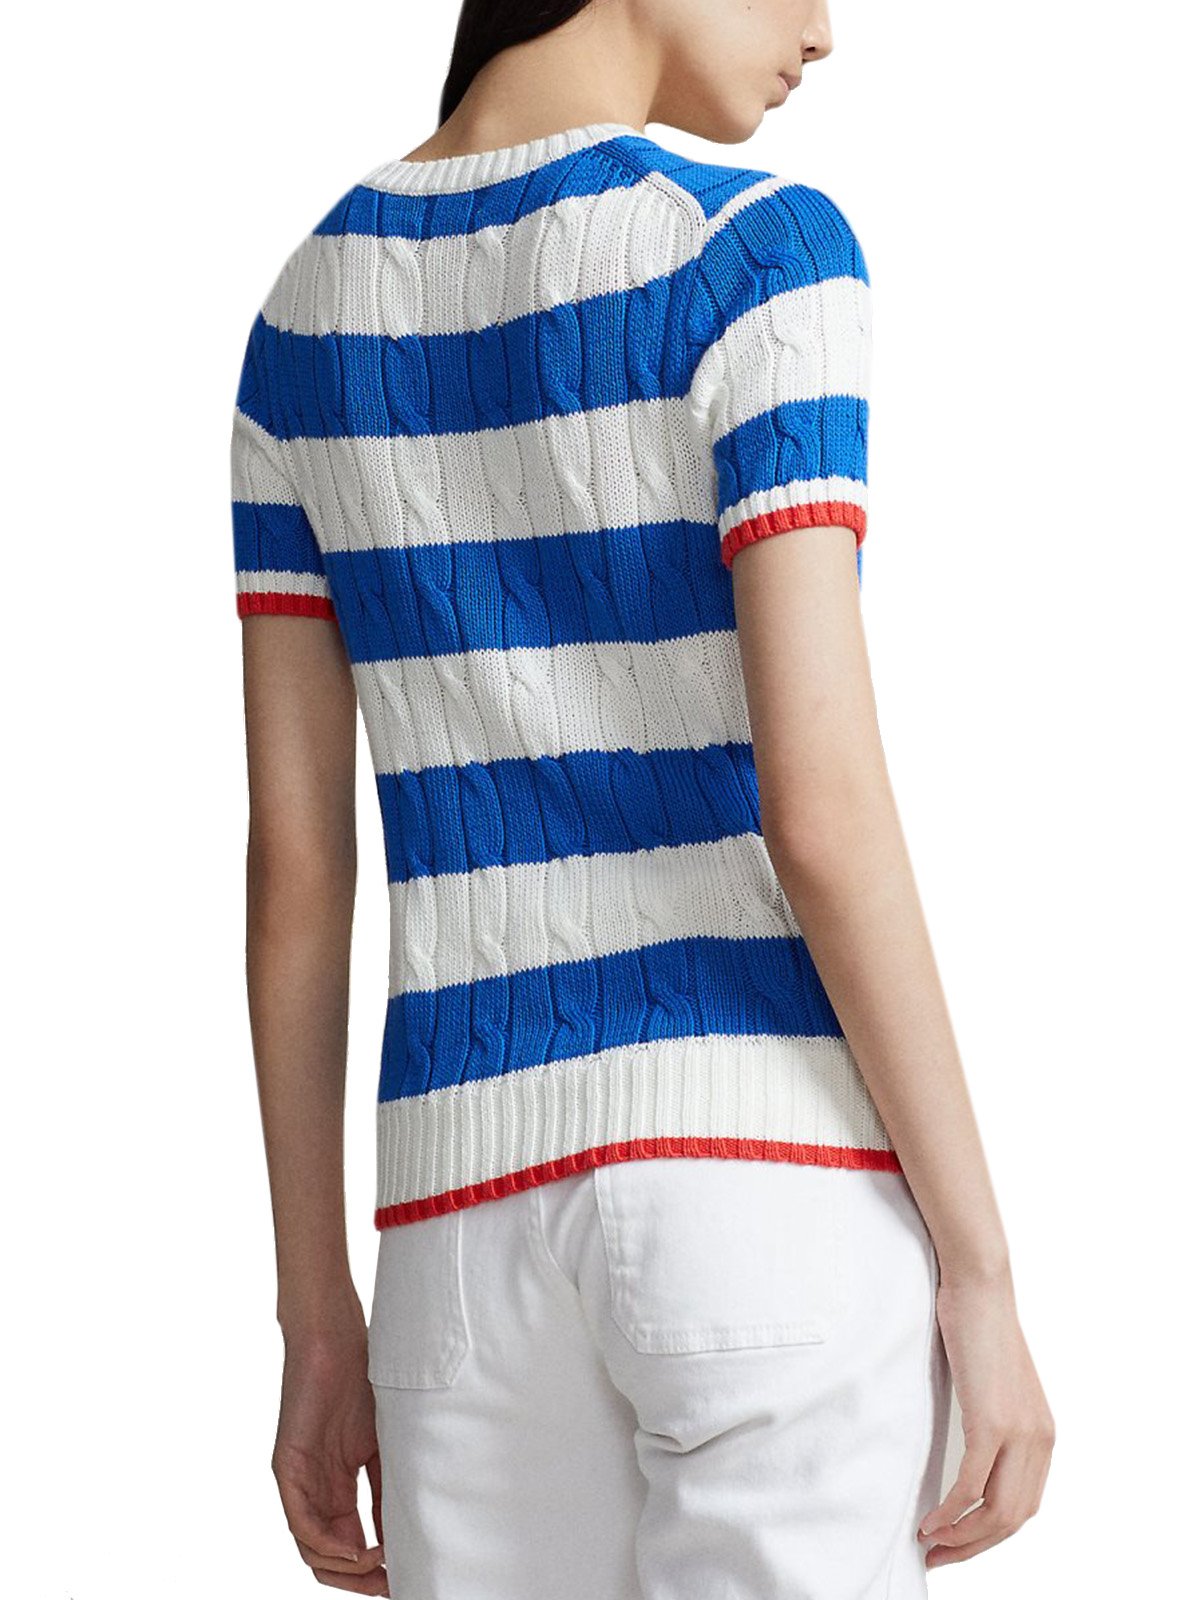 T-shirt Donna Ralph Lauren - Maglia A Righe In Cotone A Trecce - Bianco